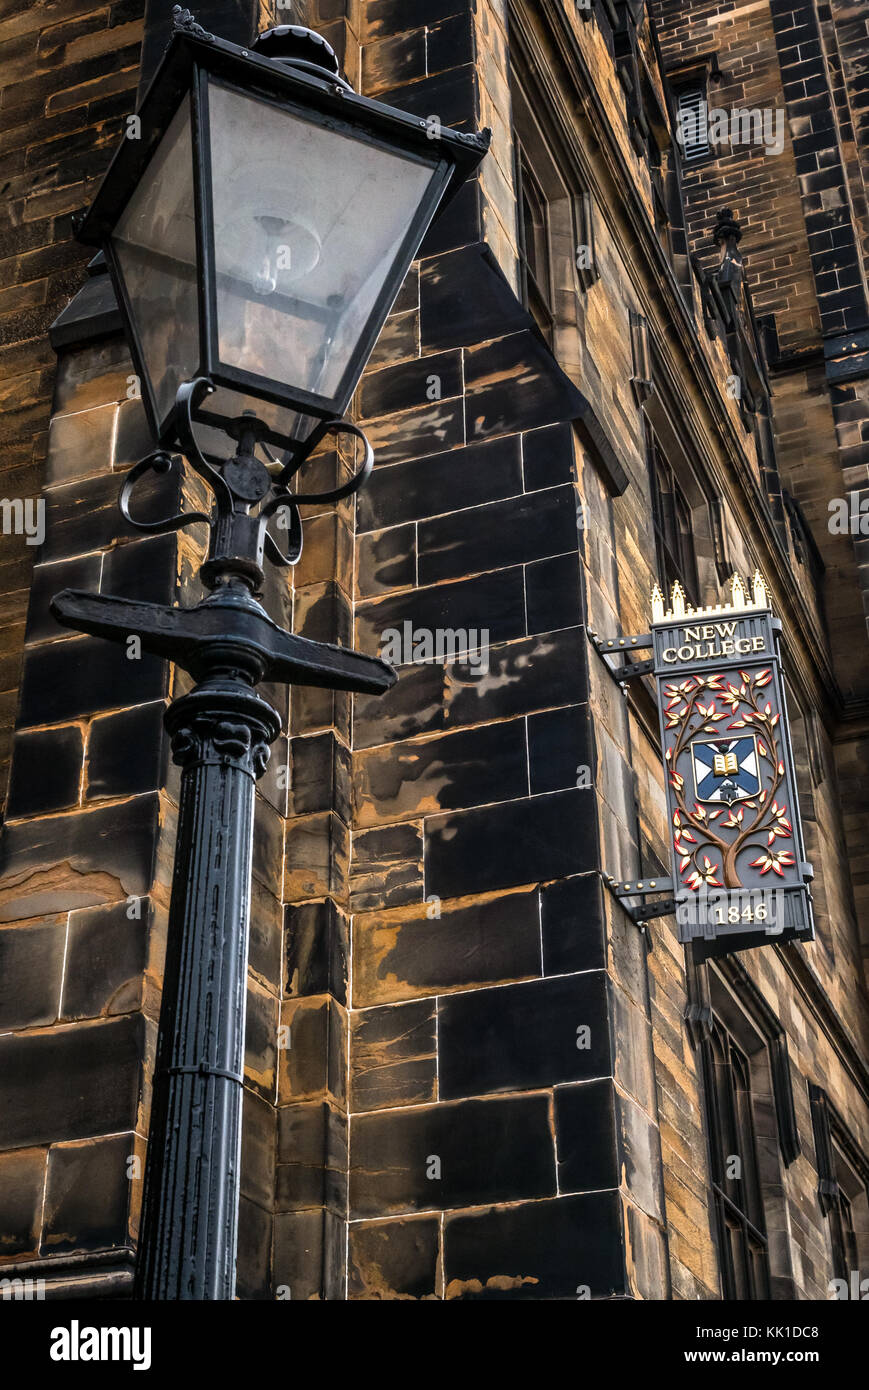 Old fashioned lampadaire décoratif et signe 1846, nouveau collège, Assemblée générale sur le monticule, Université d'Édimbourg, l'Église libre d'Écosse, Royaume-Uni Banque D'Images